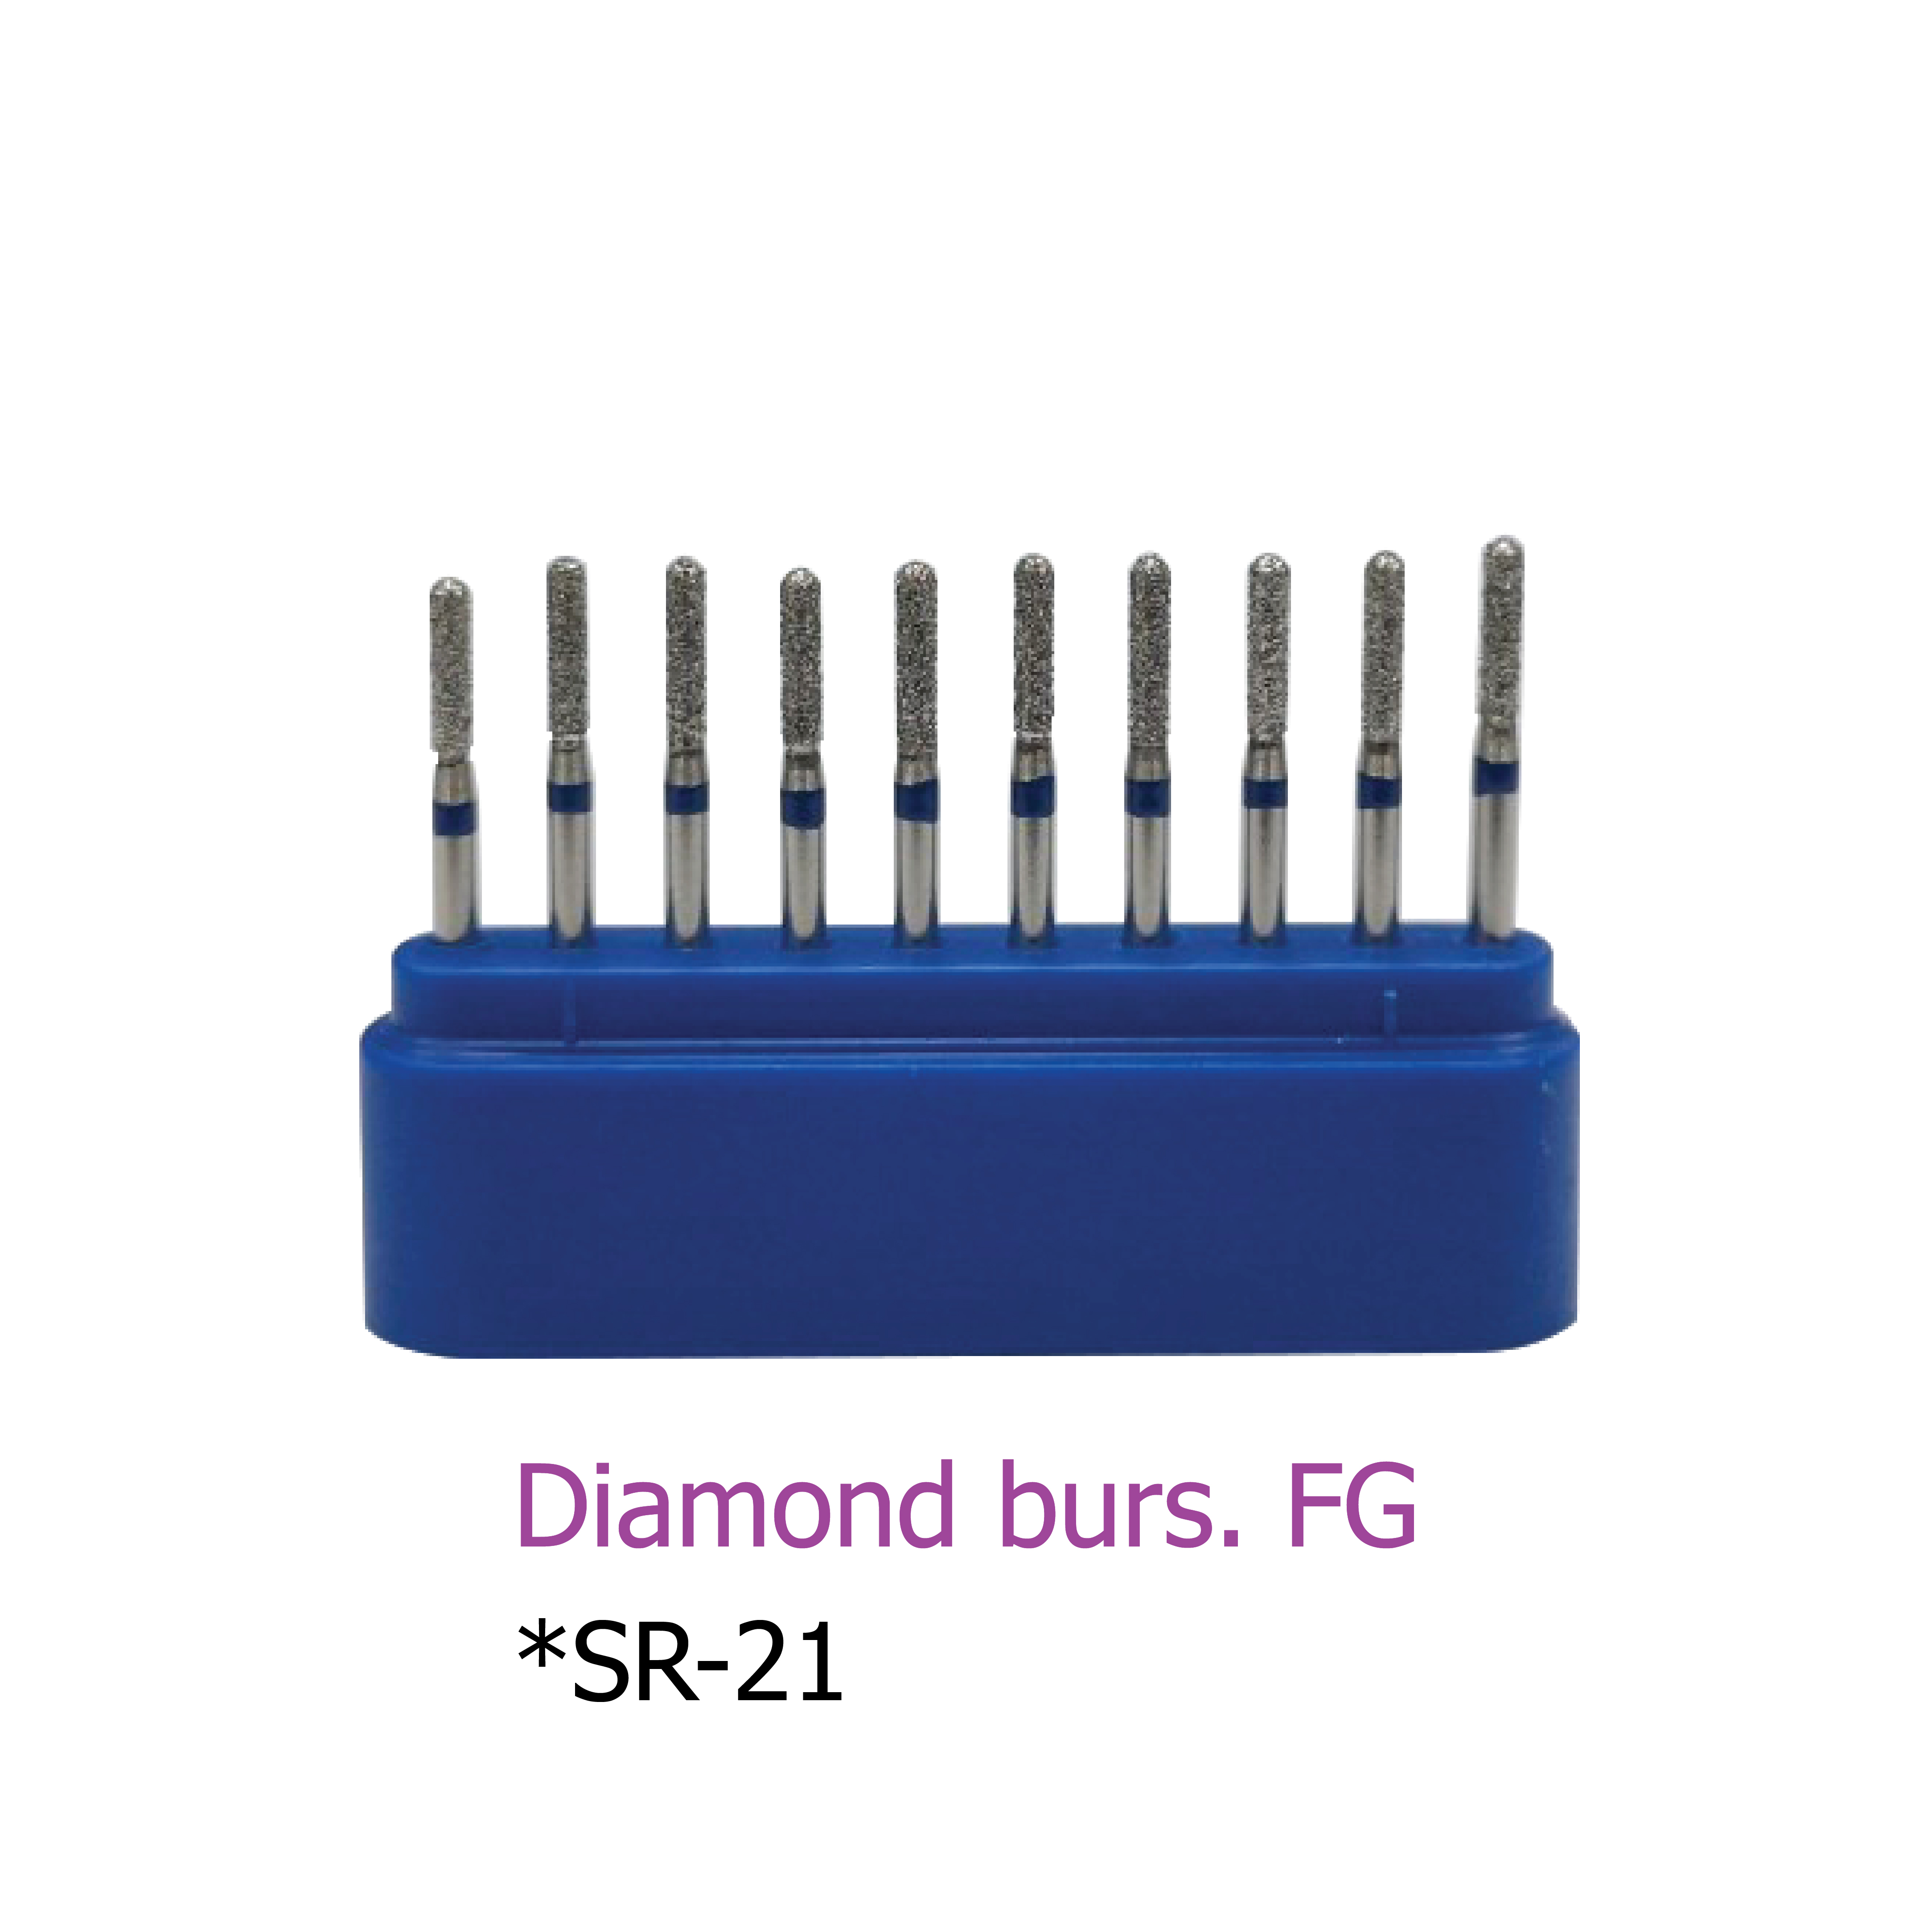 Diamond burs. FG *SR-21